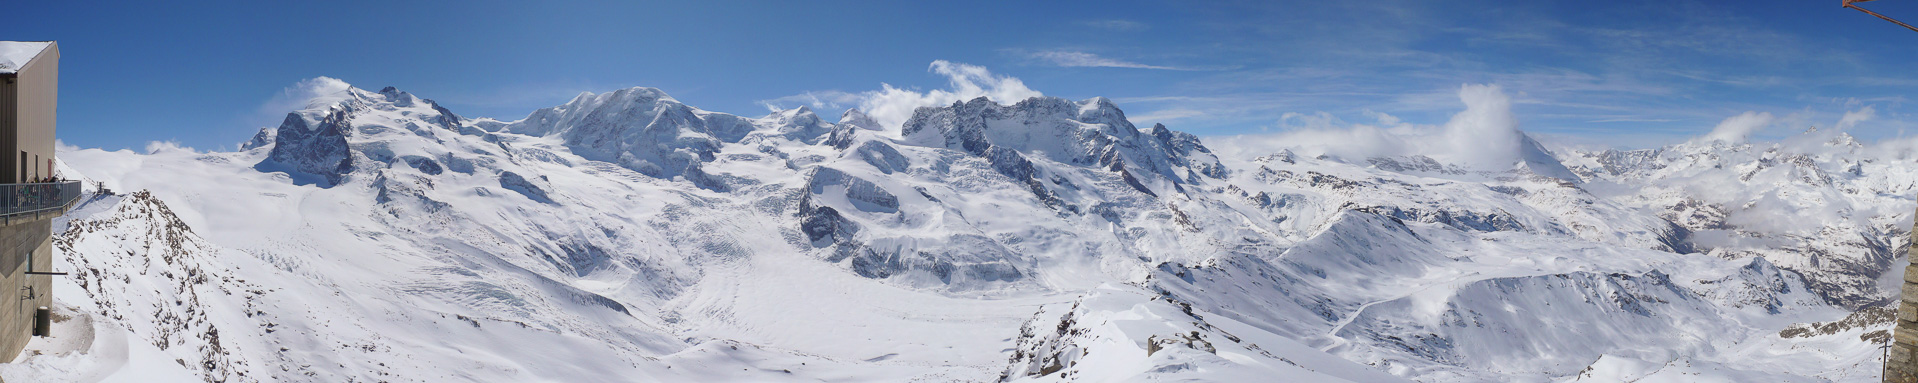 Monte Rosa, Lyskamm, Castor, Pollux, Breithorn und - umwölkt - das Matterhorn.